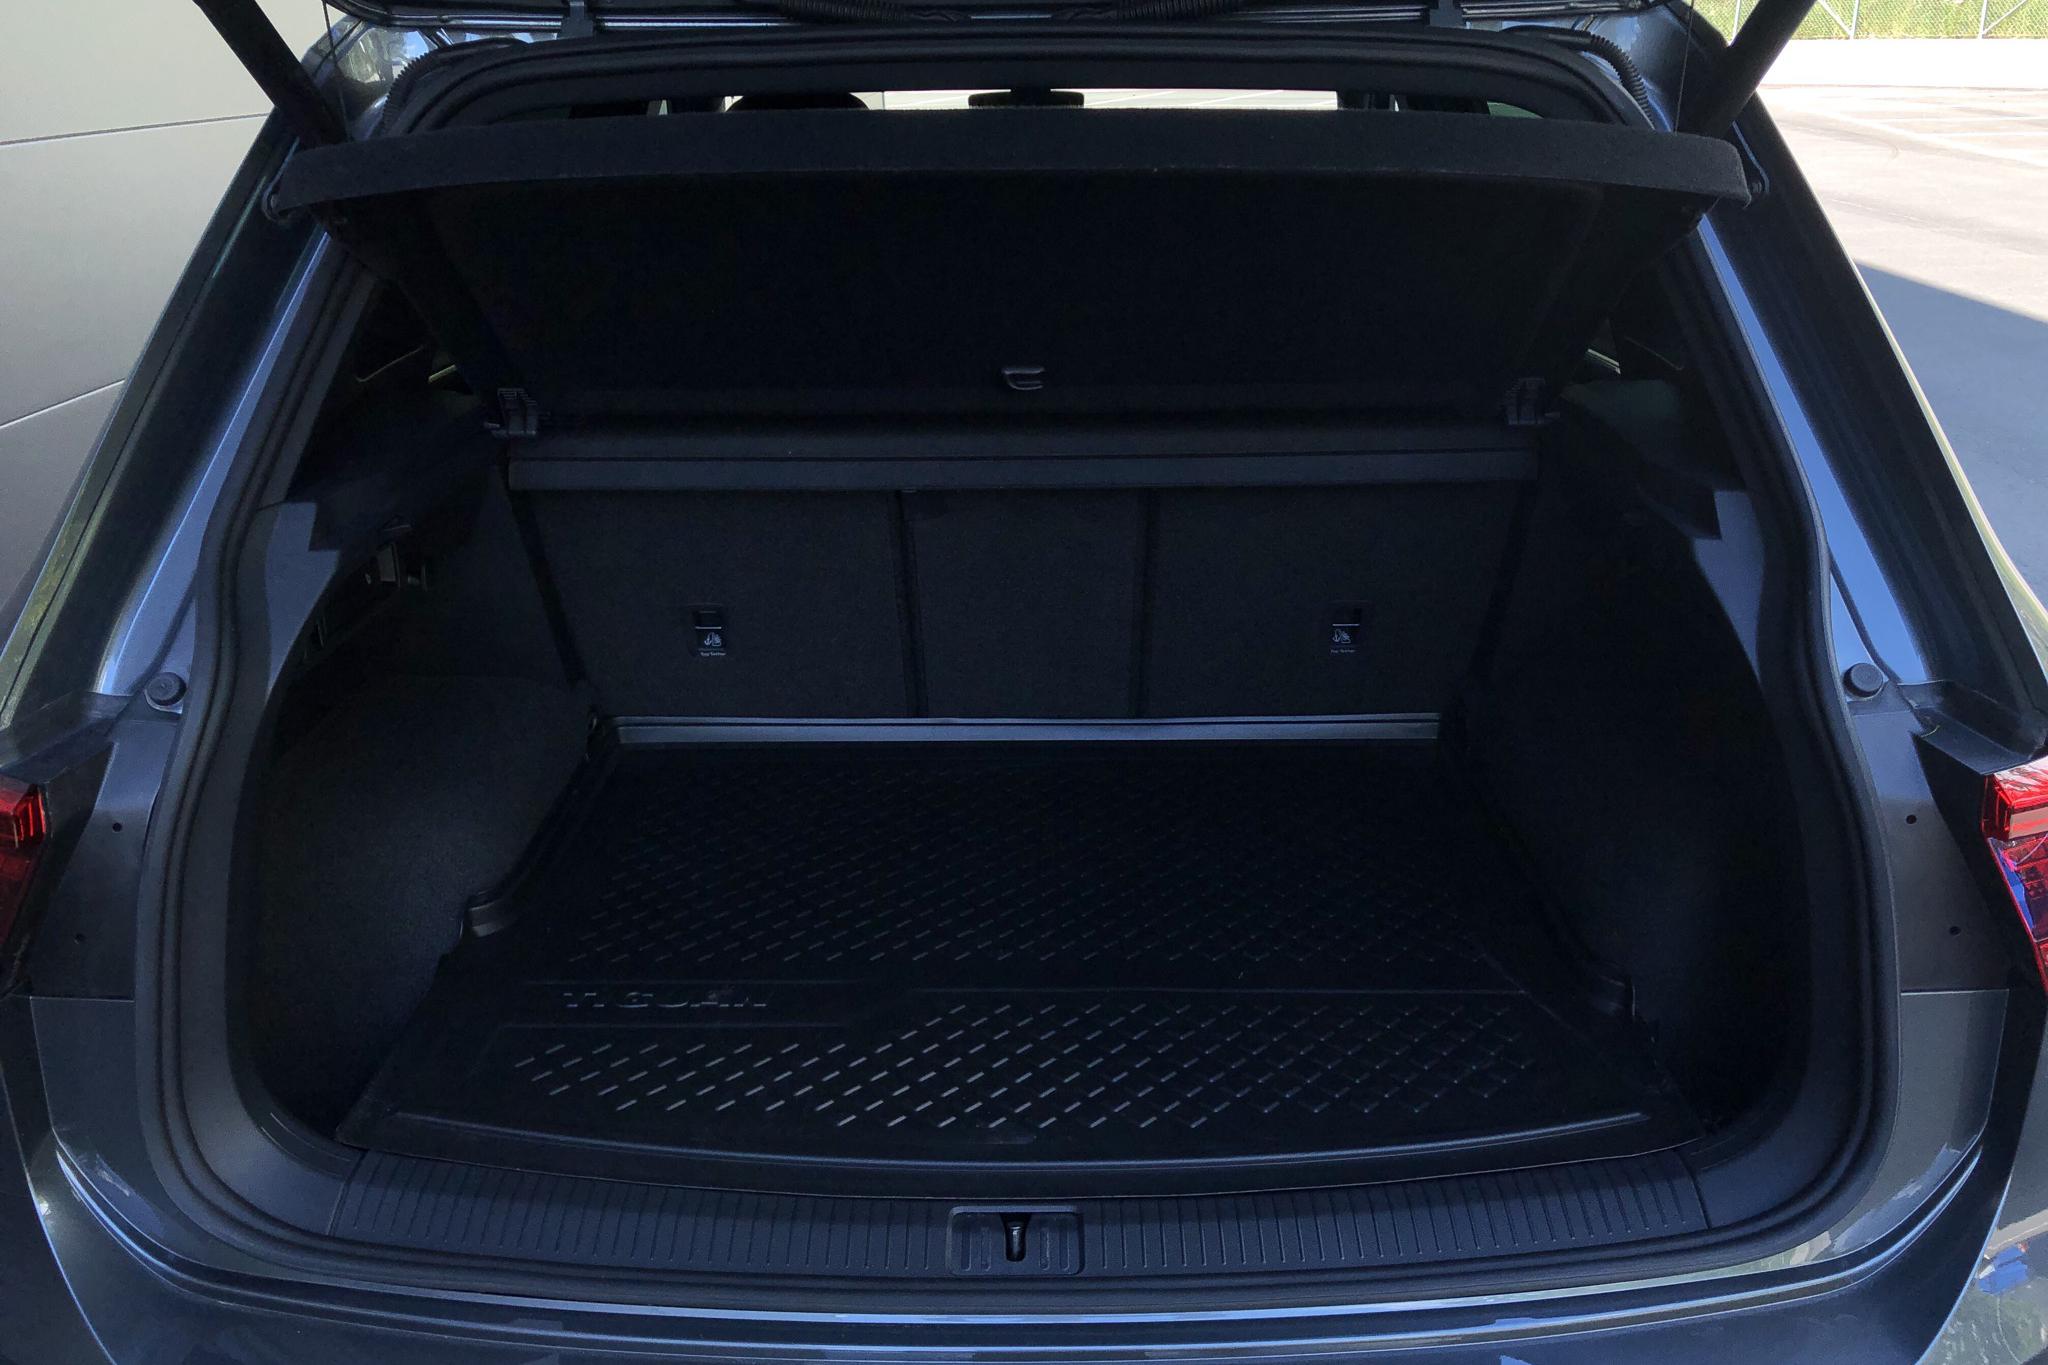 VW Tiguan 2.0 TDI 4MOTION (190hk) - 52 800 km - Automatic - gray - 2019